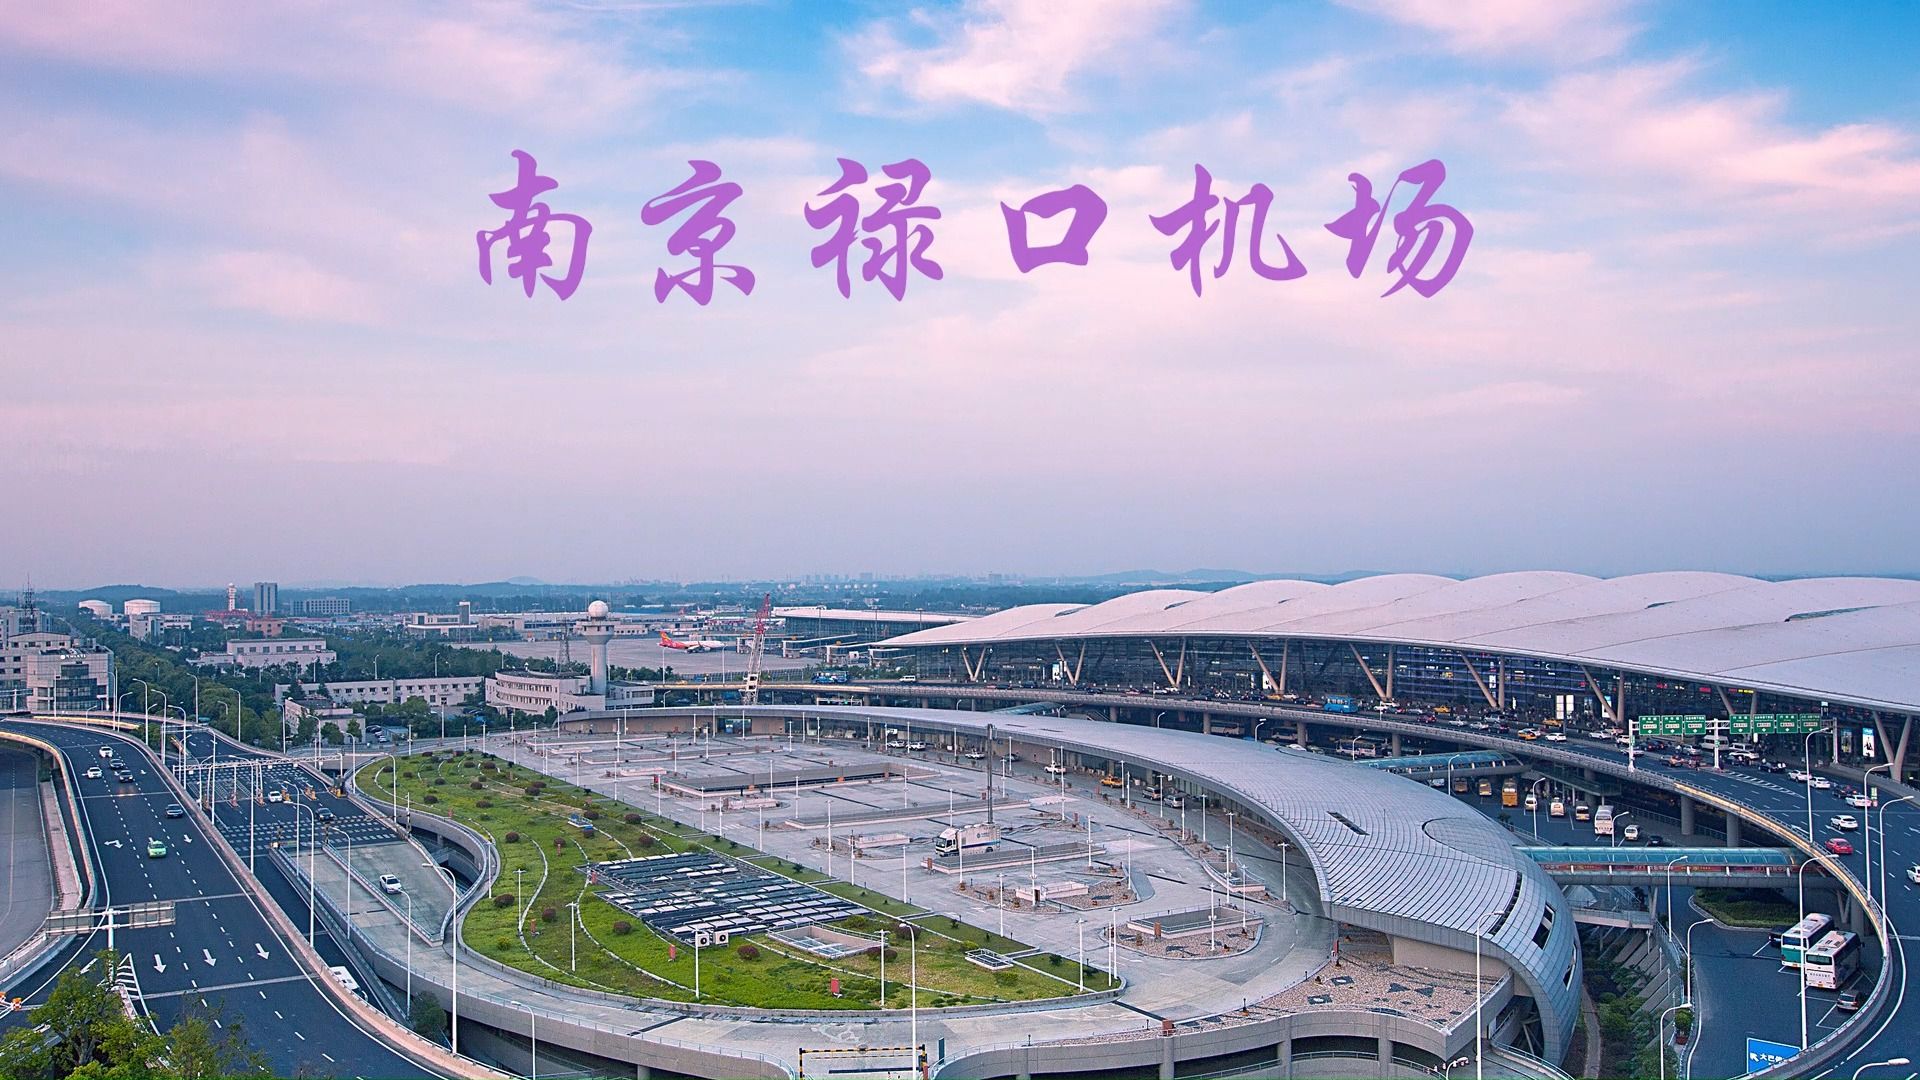 [旅行3]暑假去社会实践,录下了南京禄口机场的t1航站楼全貌